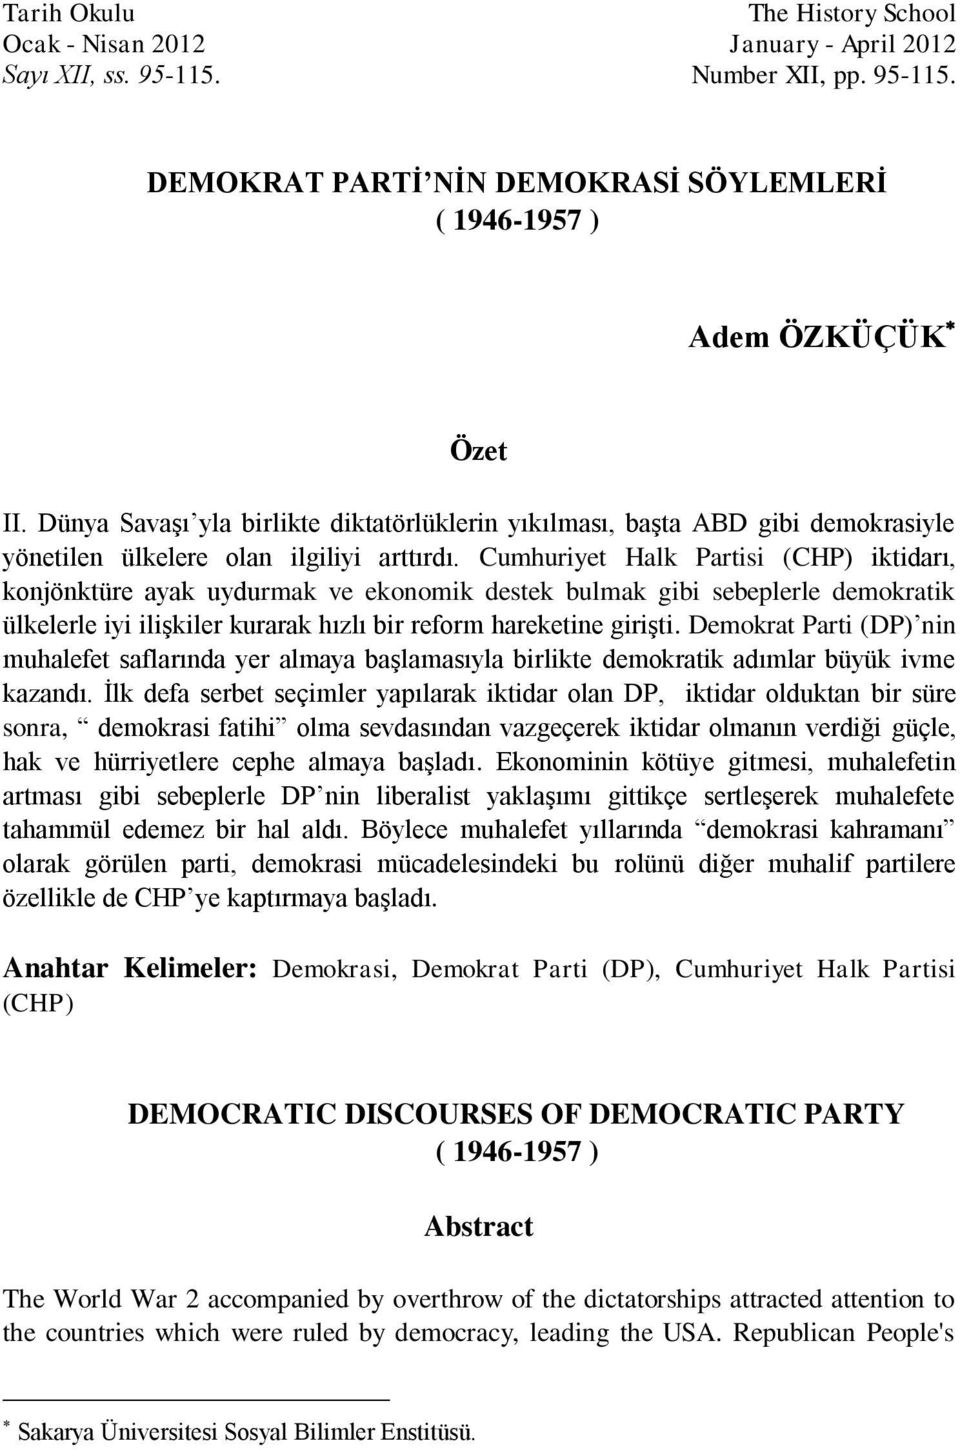 Cumhuriyet Halk Partisi (CHP) iktidarı, konjönktüre ayak uydurmak ve ekonomik destek bulmak gibi sebeplerle demokratik ülkelerle iyi ilişkiler kurarak hızlı bir reform hareketine girişti.